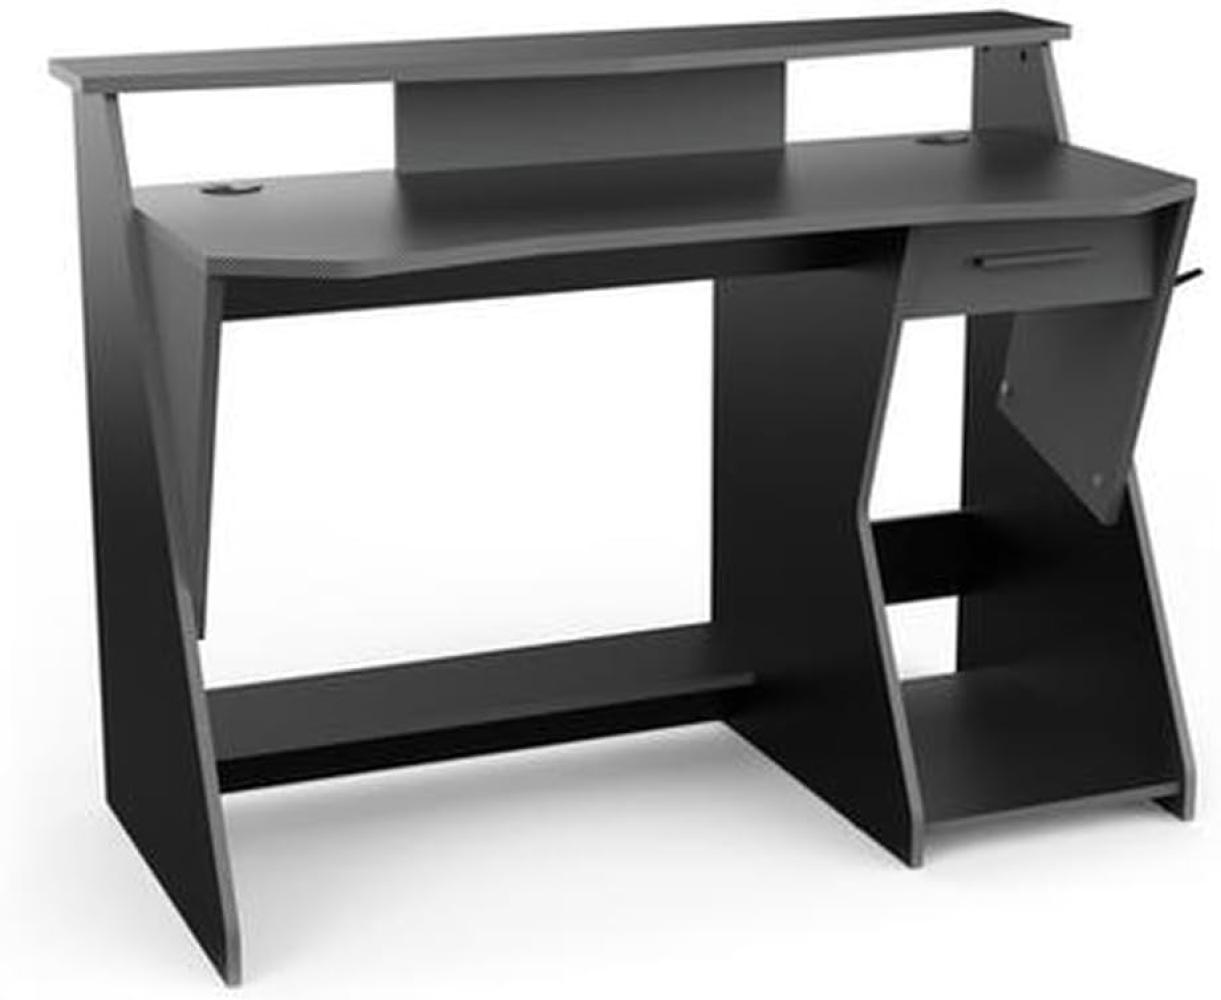 Gamingtisch >Skin< in schwarz/grau aus Holzwerkstoff - 124x90x60cm (BxHxT) Bild 1